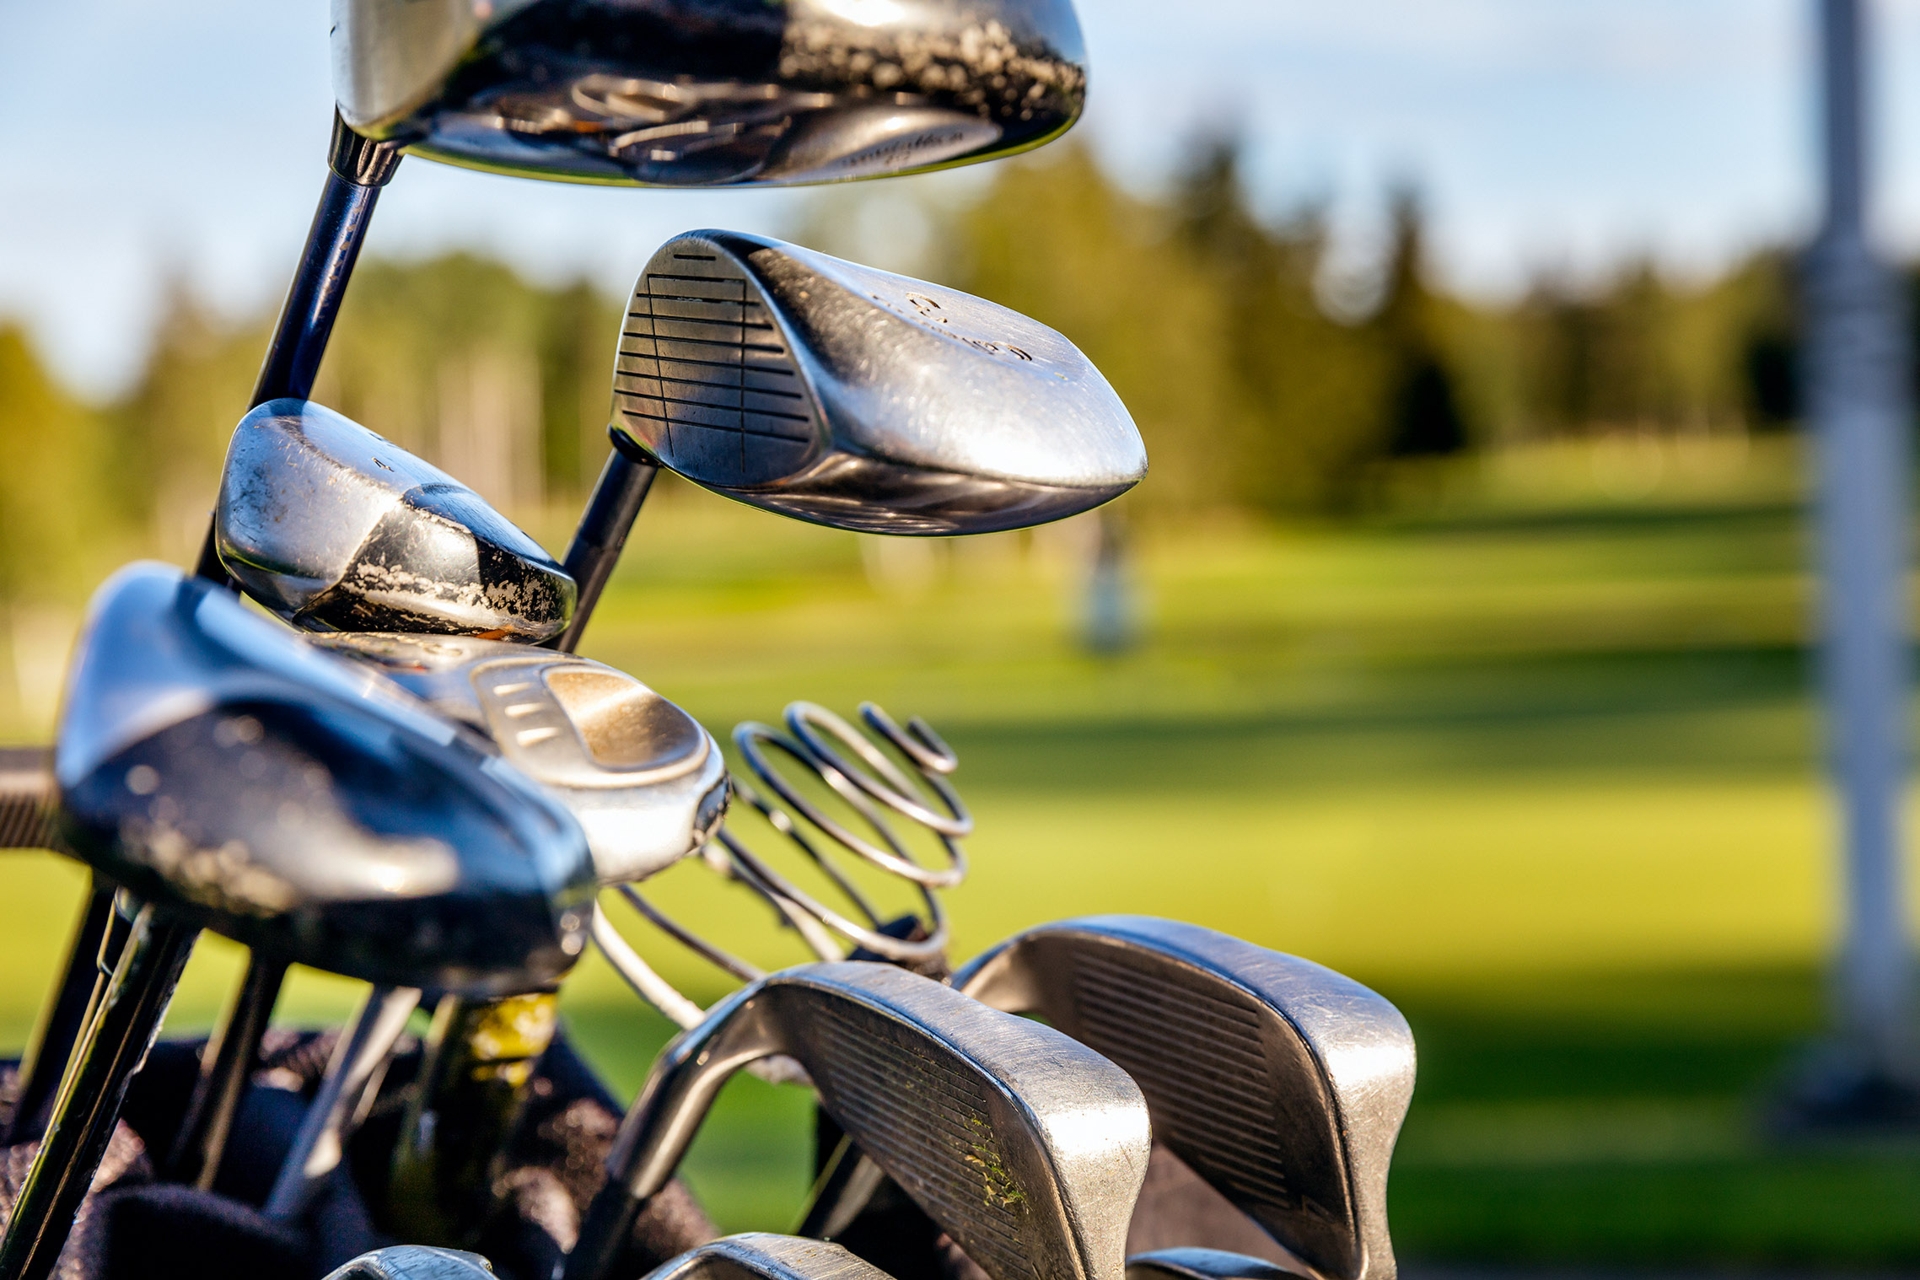 Närbild av golfklubbor med en grön golfbana i bakgrunden